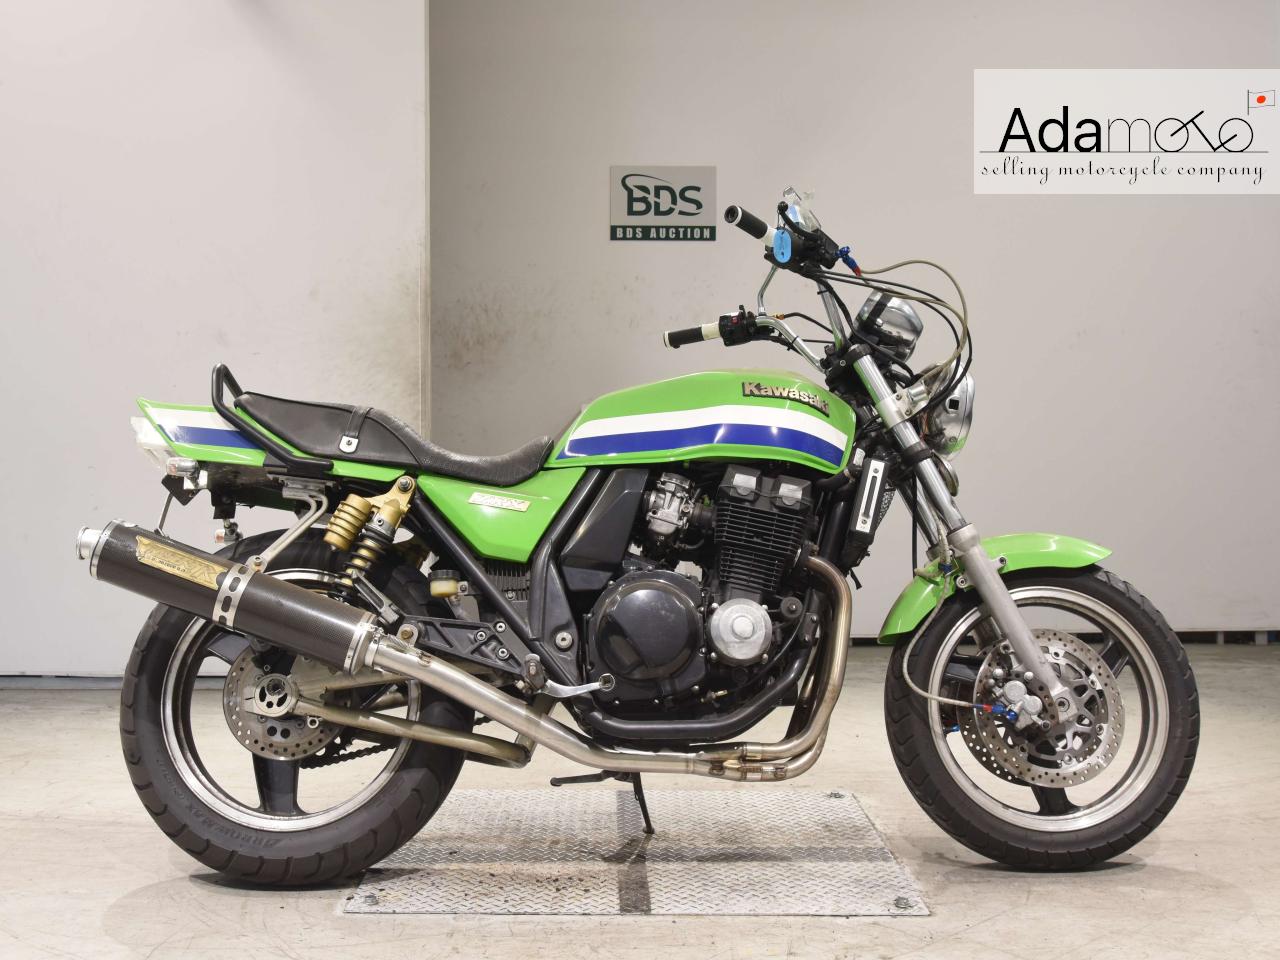 Kawasaki ZRX400 sold out - Adamoto - Motorcycles from Japan